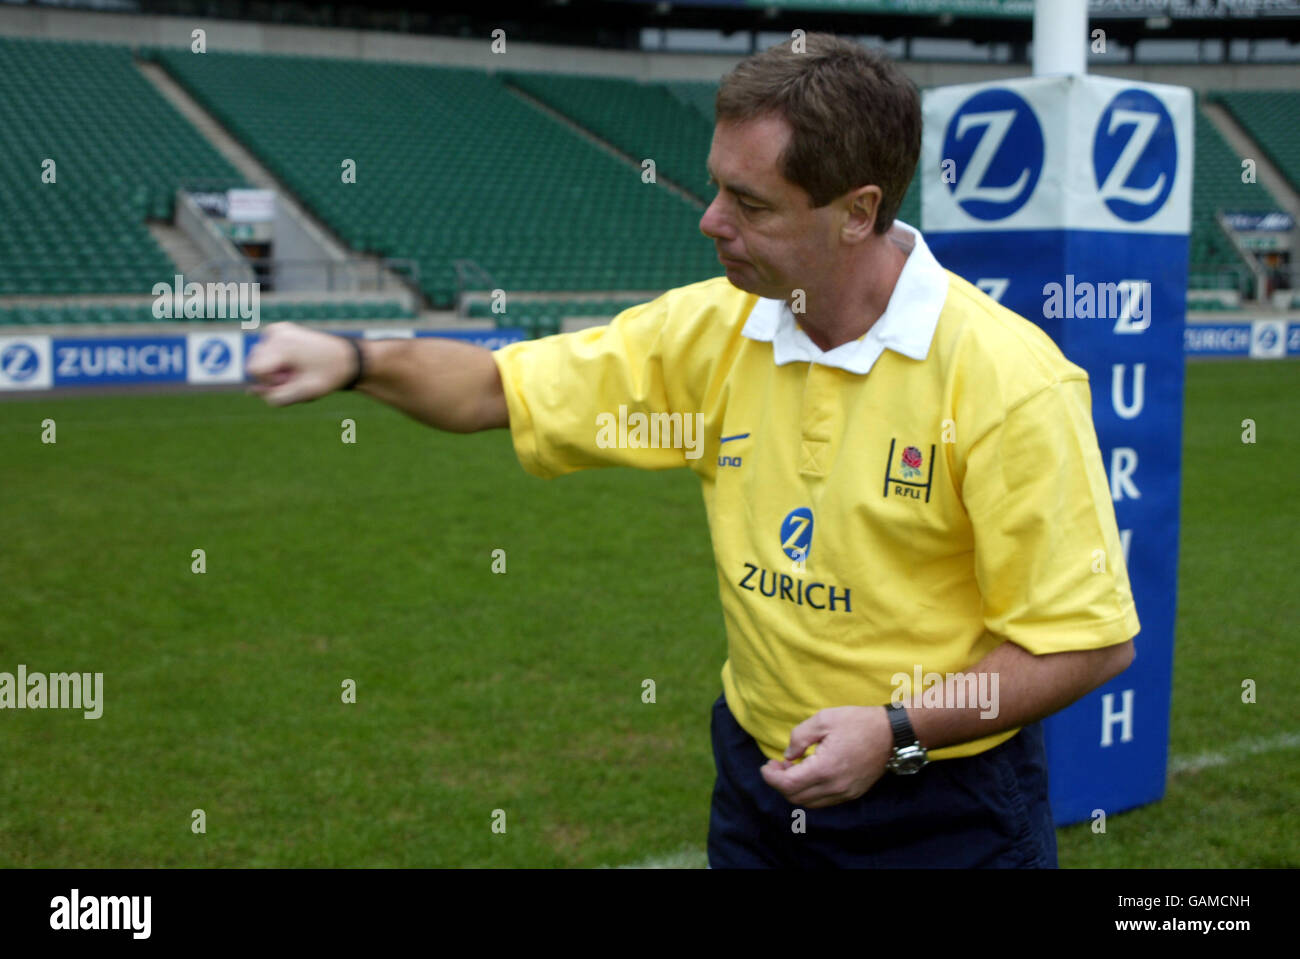 Rugby Union - signaux de l'arbitre.Soutenir l'adversaire en tirant dessus Banque D'Images